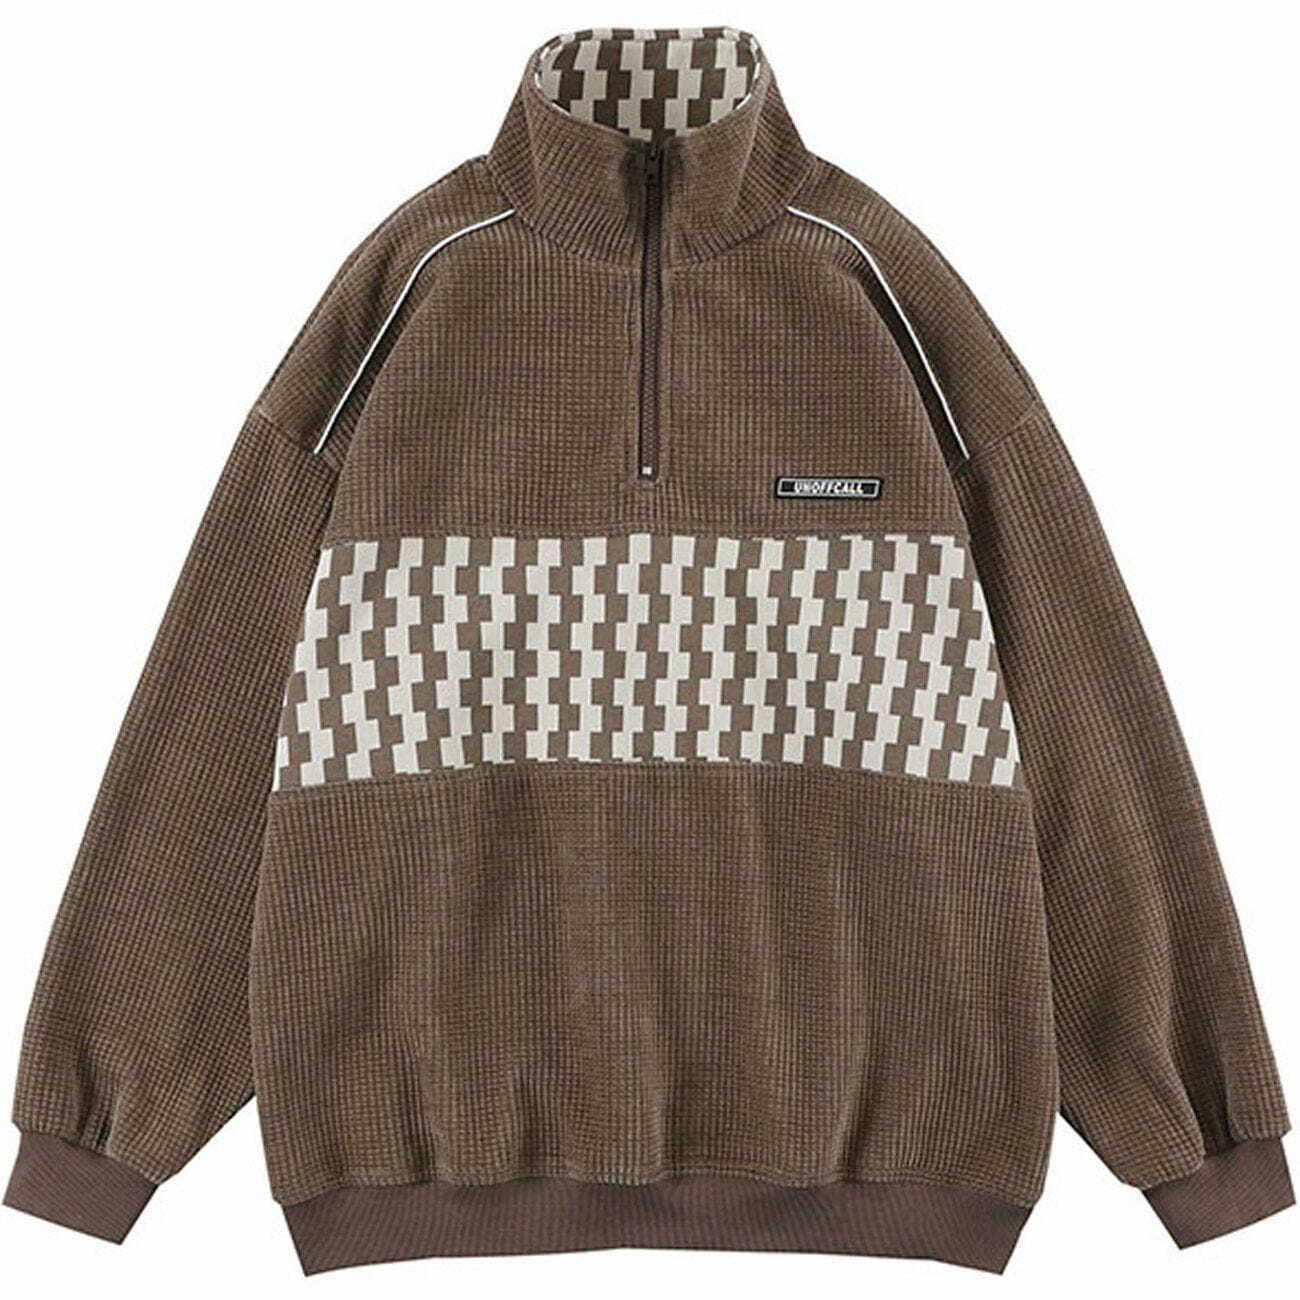 stylish retro stitched sweatshirt vintage vibes 3099